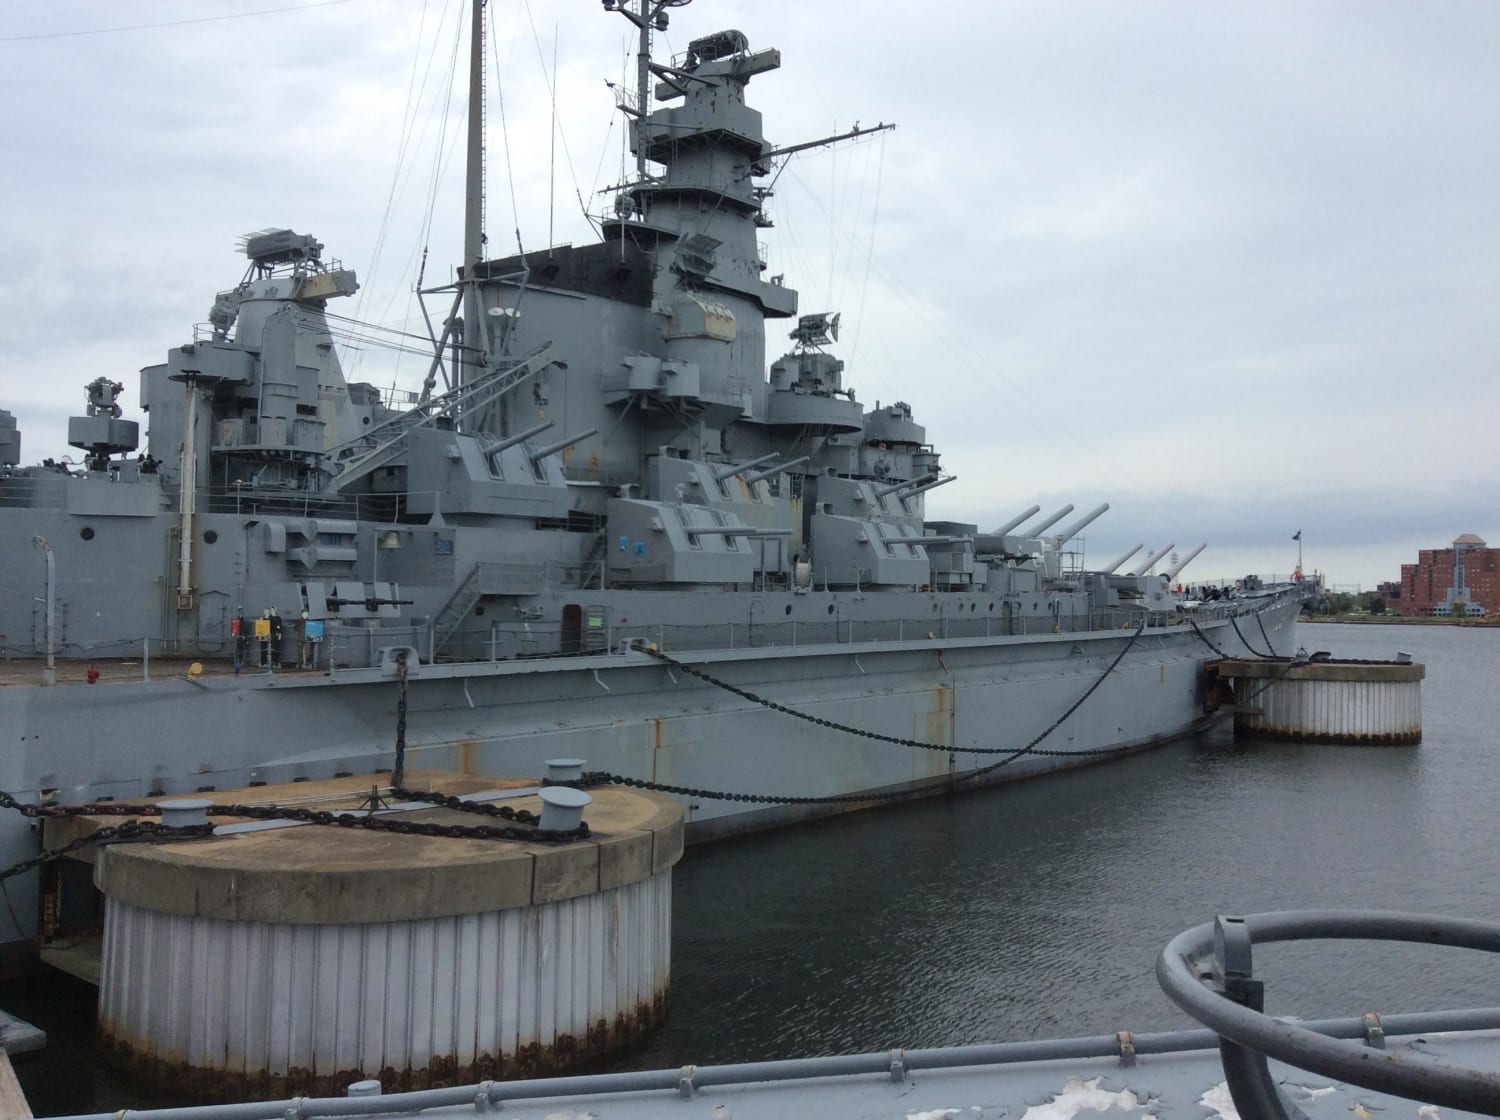 The battleship USS Massachusetts